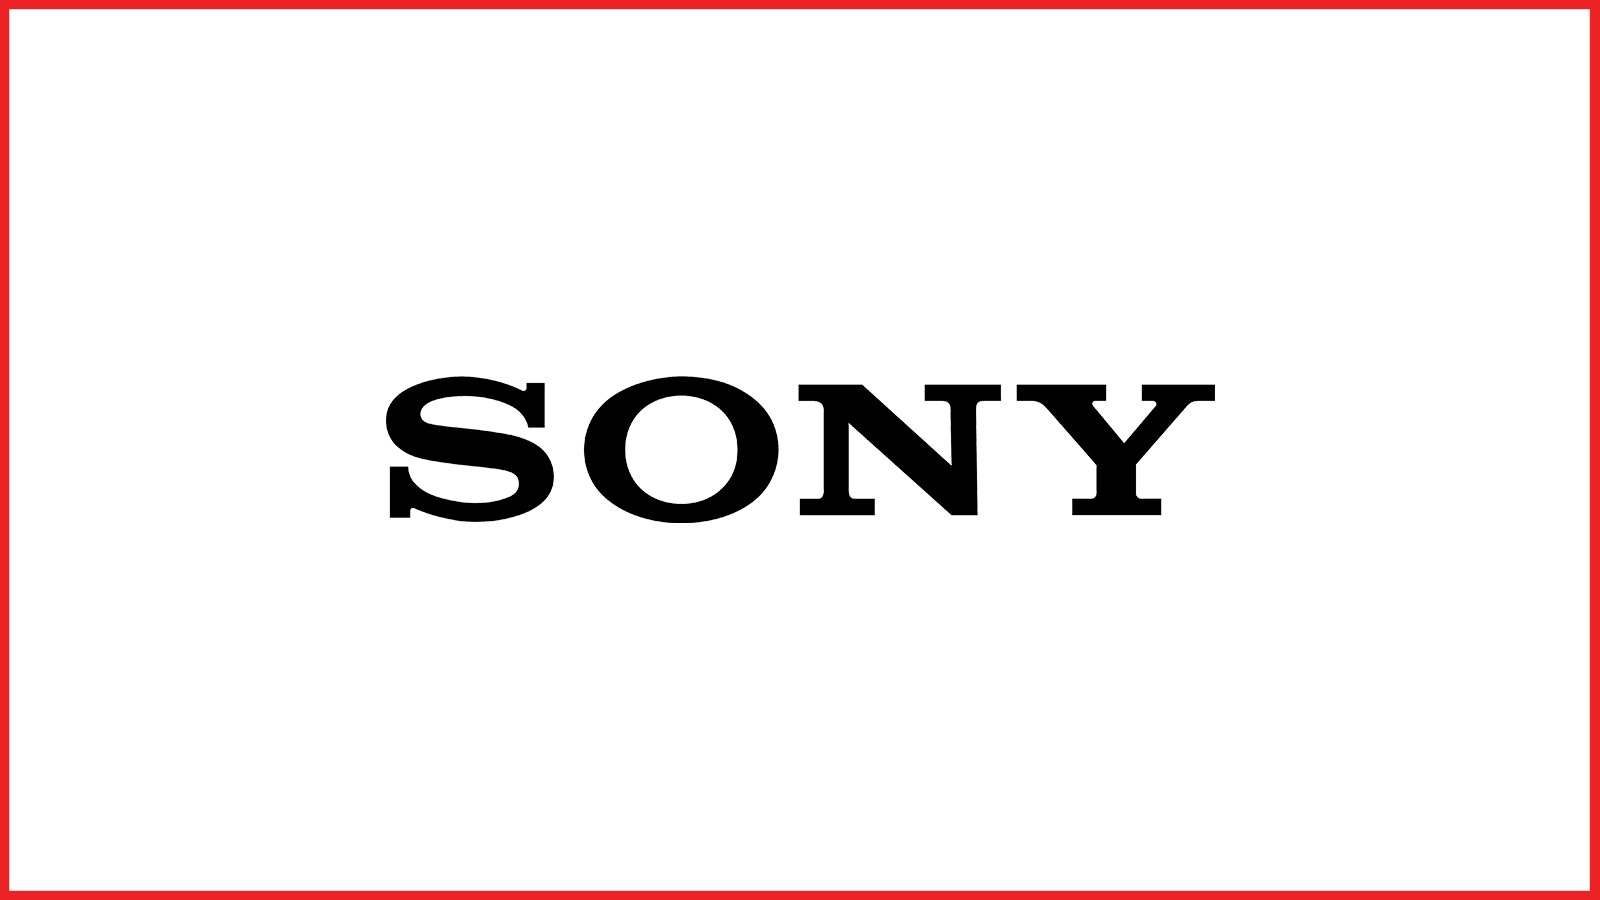 sony logo in red border